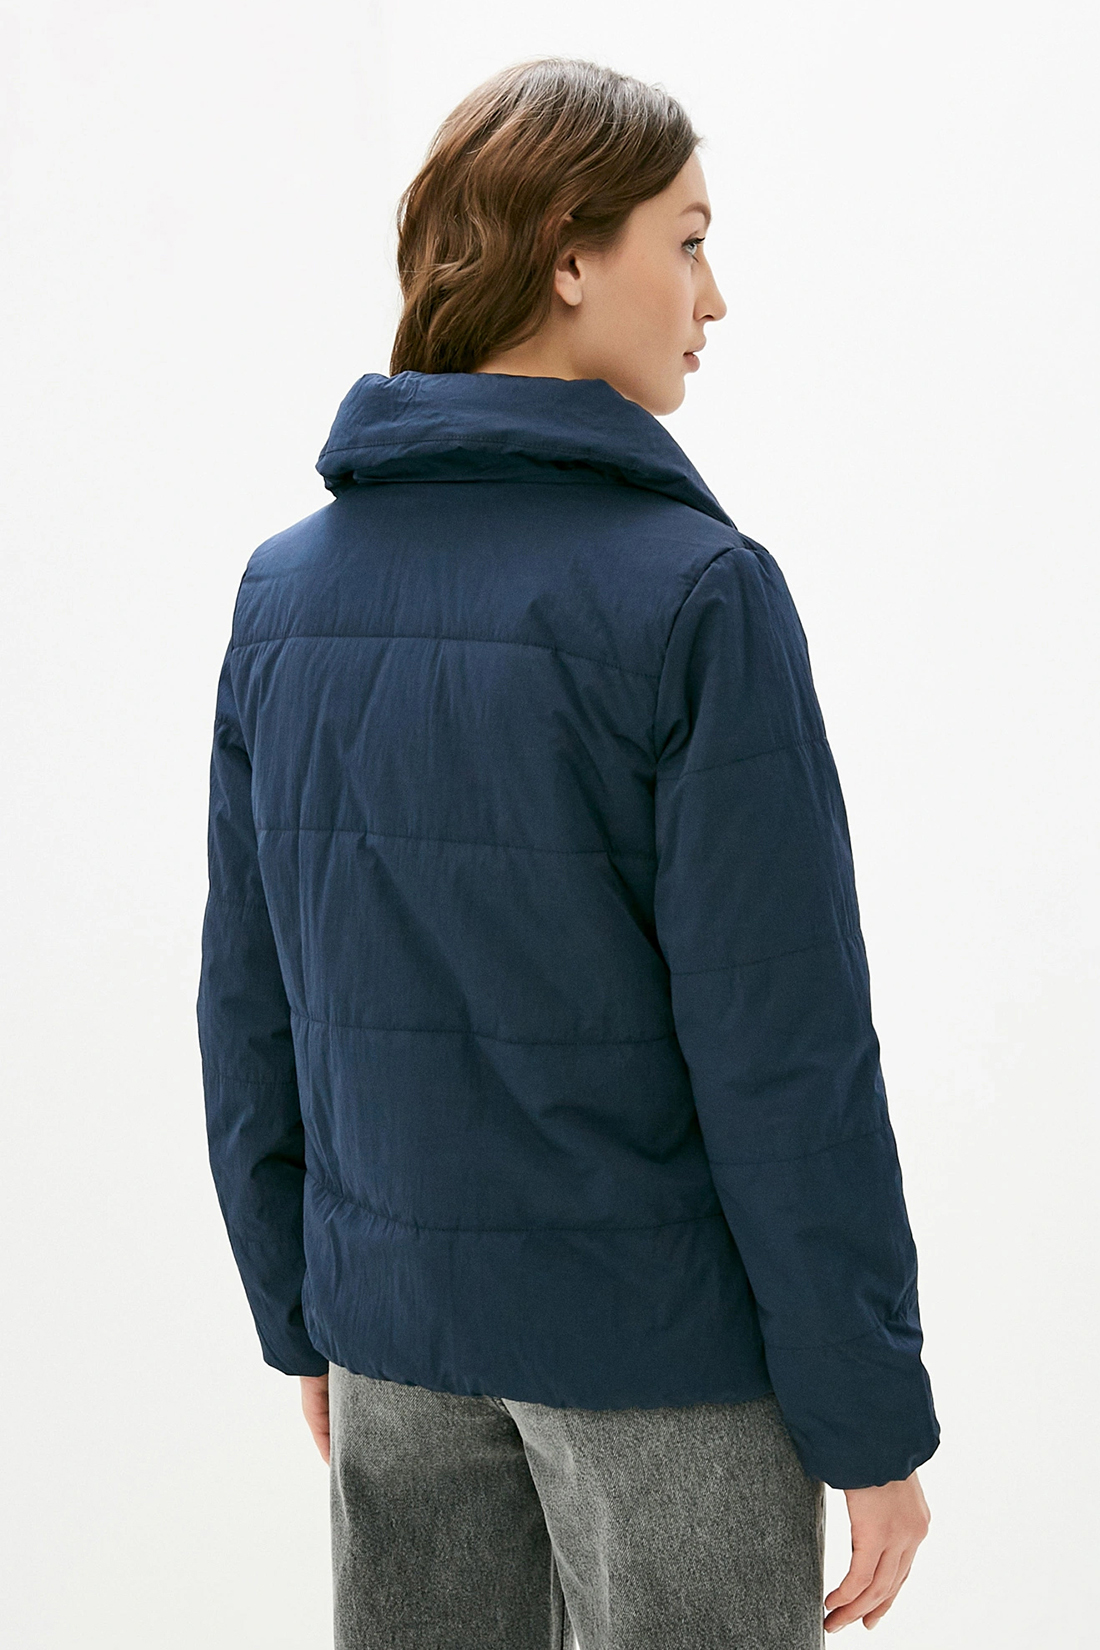 Куртка (арт. baon B030514), размер XL, цвет синий Куртка (арт. baon B030514) - фото 2